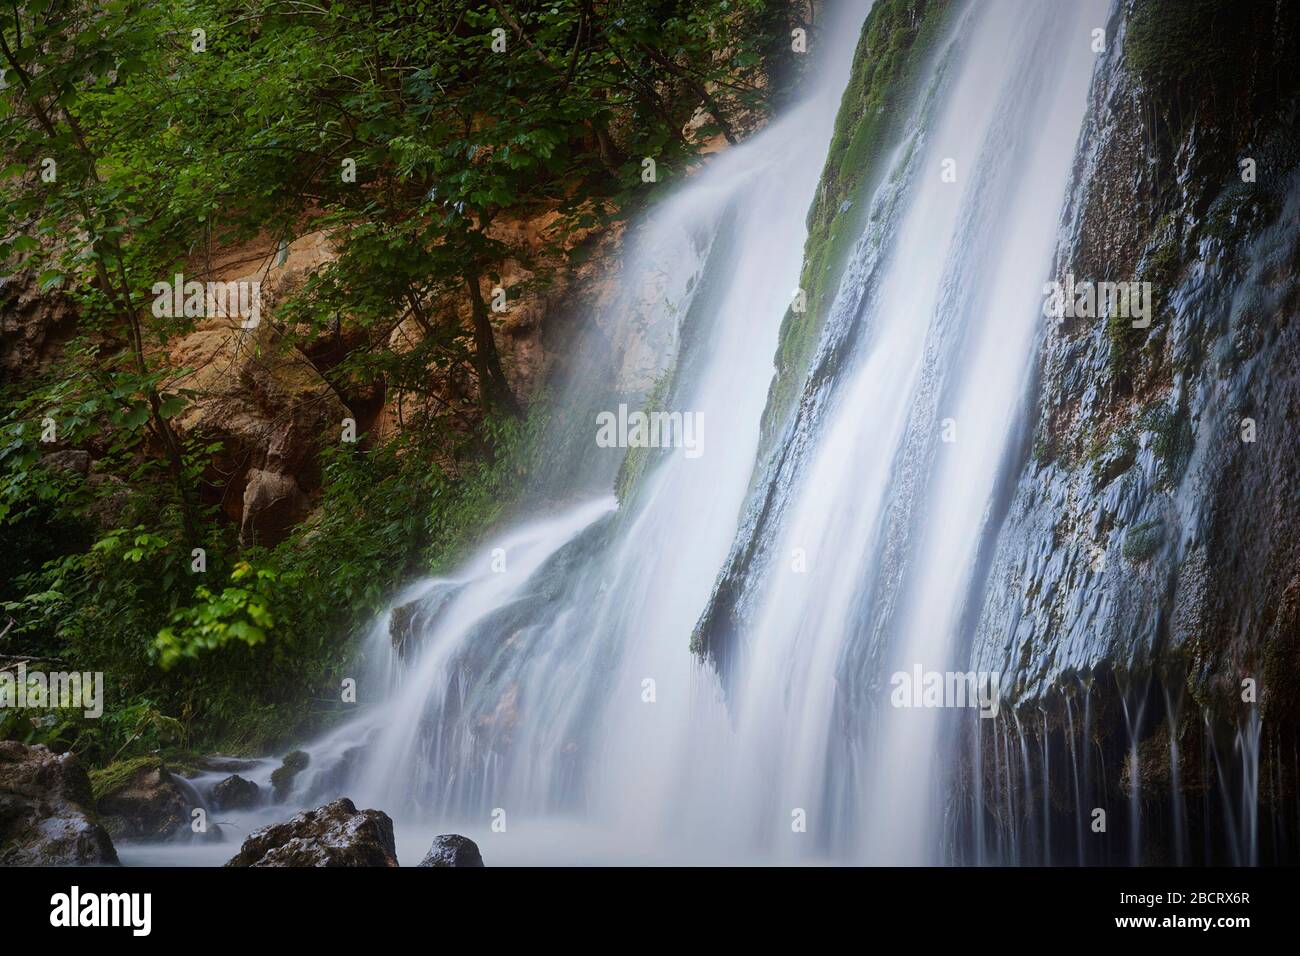 Détail de la cascade de Vadu Crisului, des montagnes d'Apuseni, Roumanie Banque D'Images